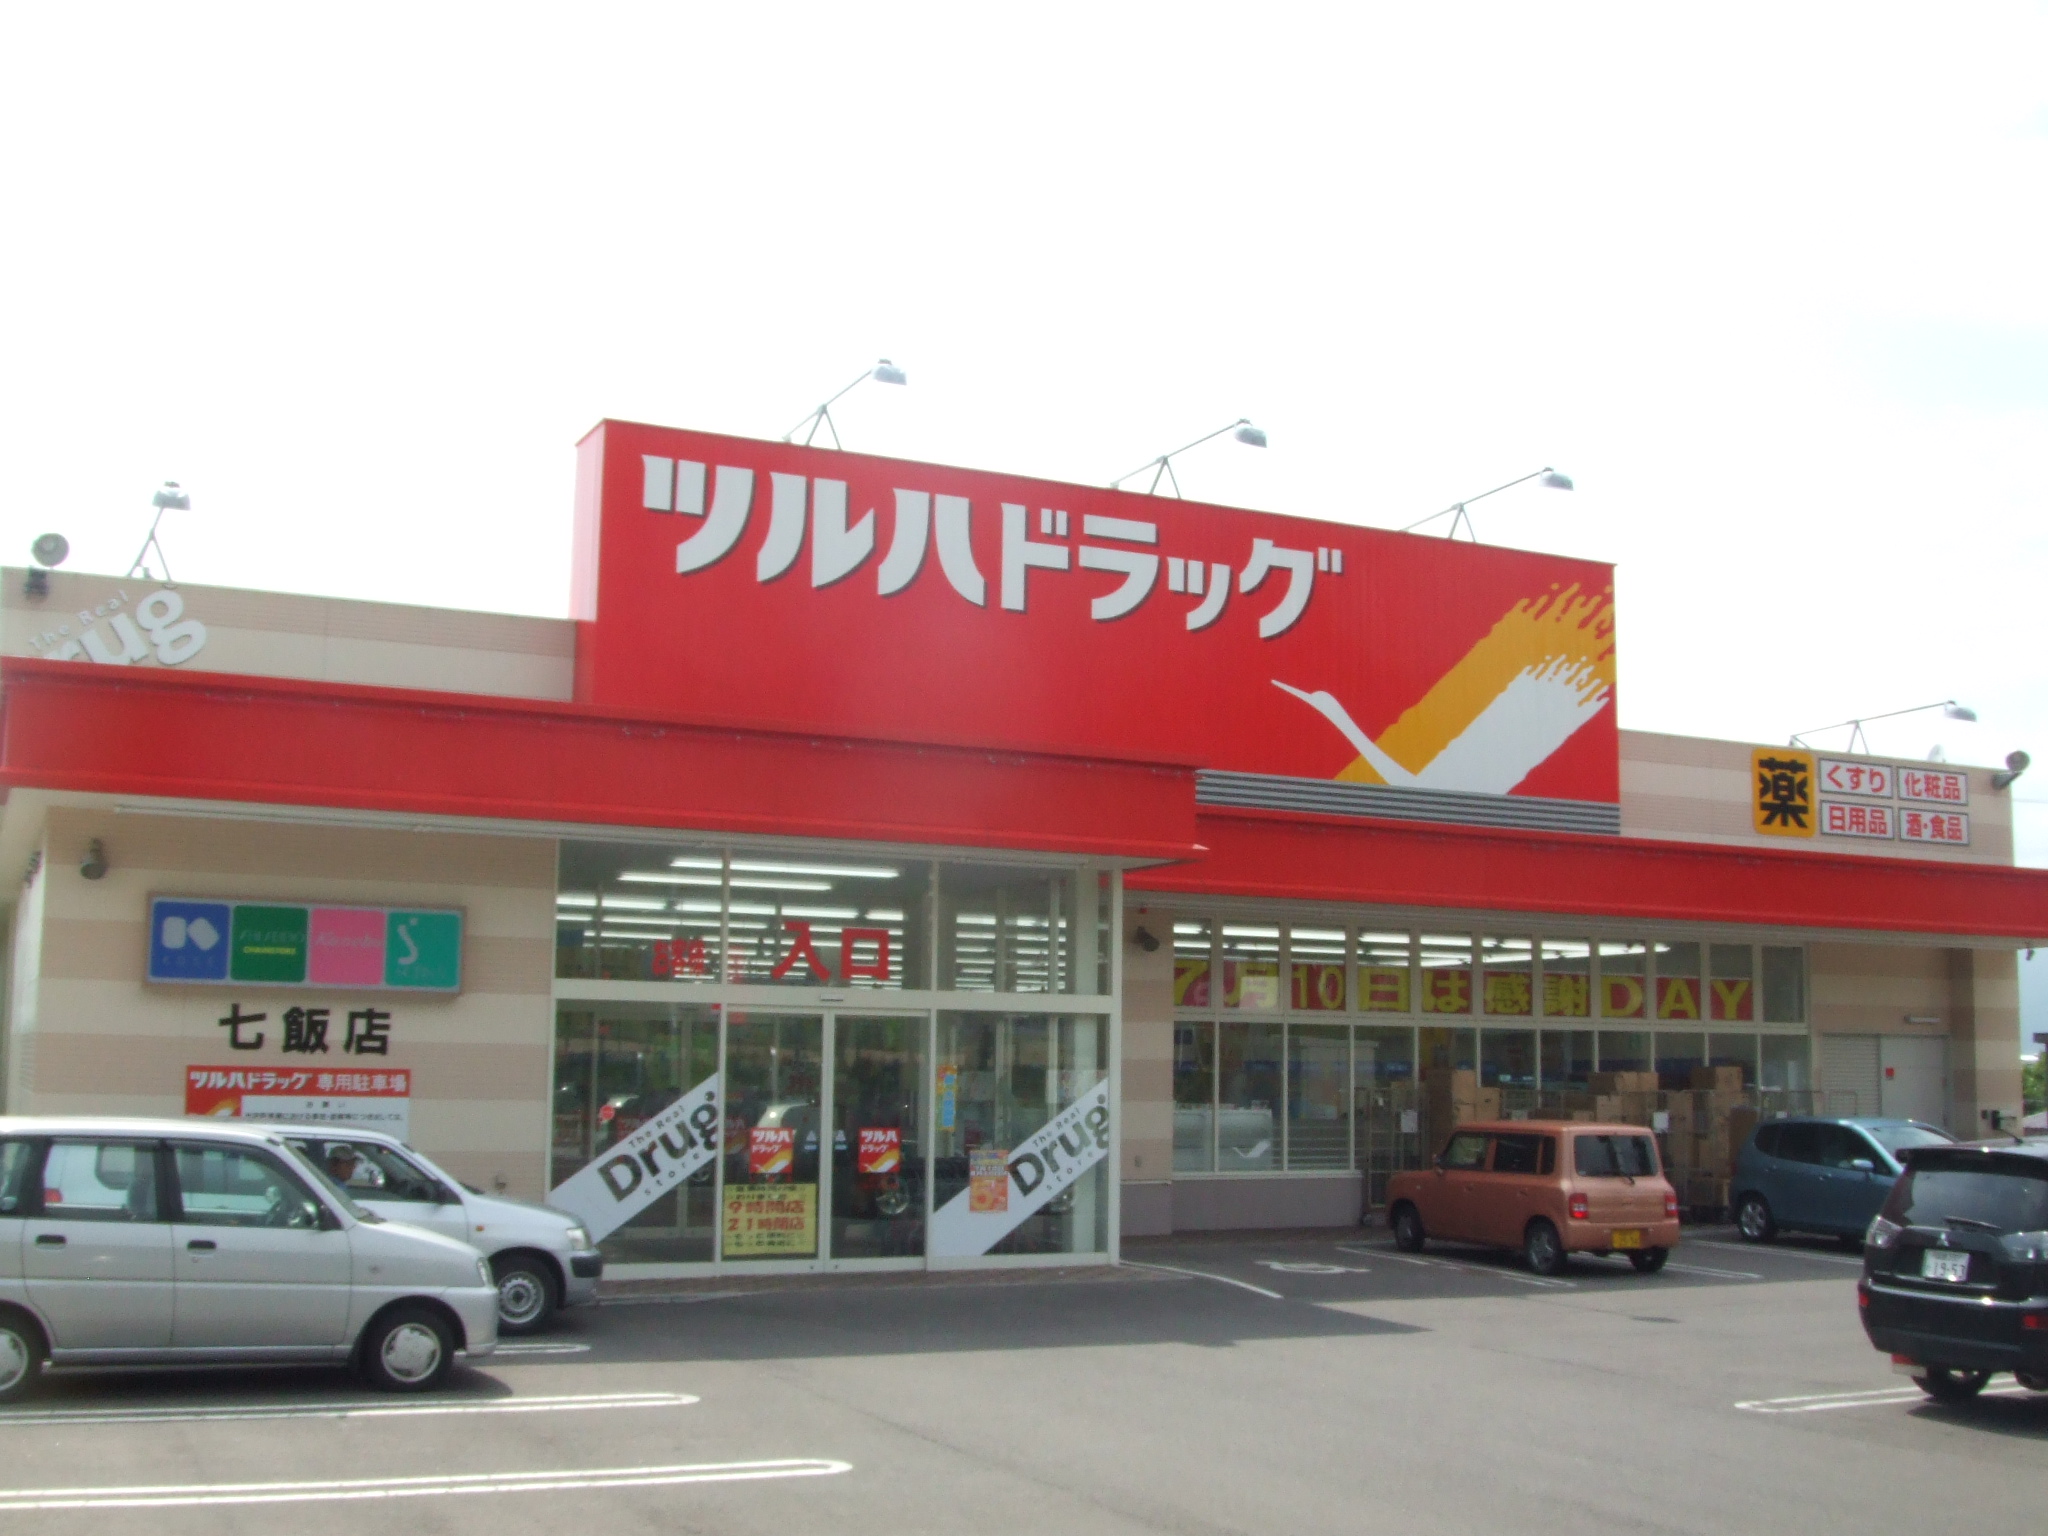 Dorakkusutoa. Tsuruha drag Nanae shop 1090m until (drugstore)